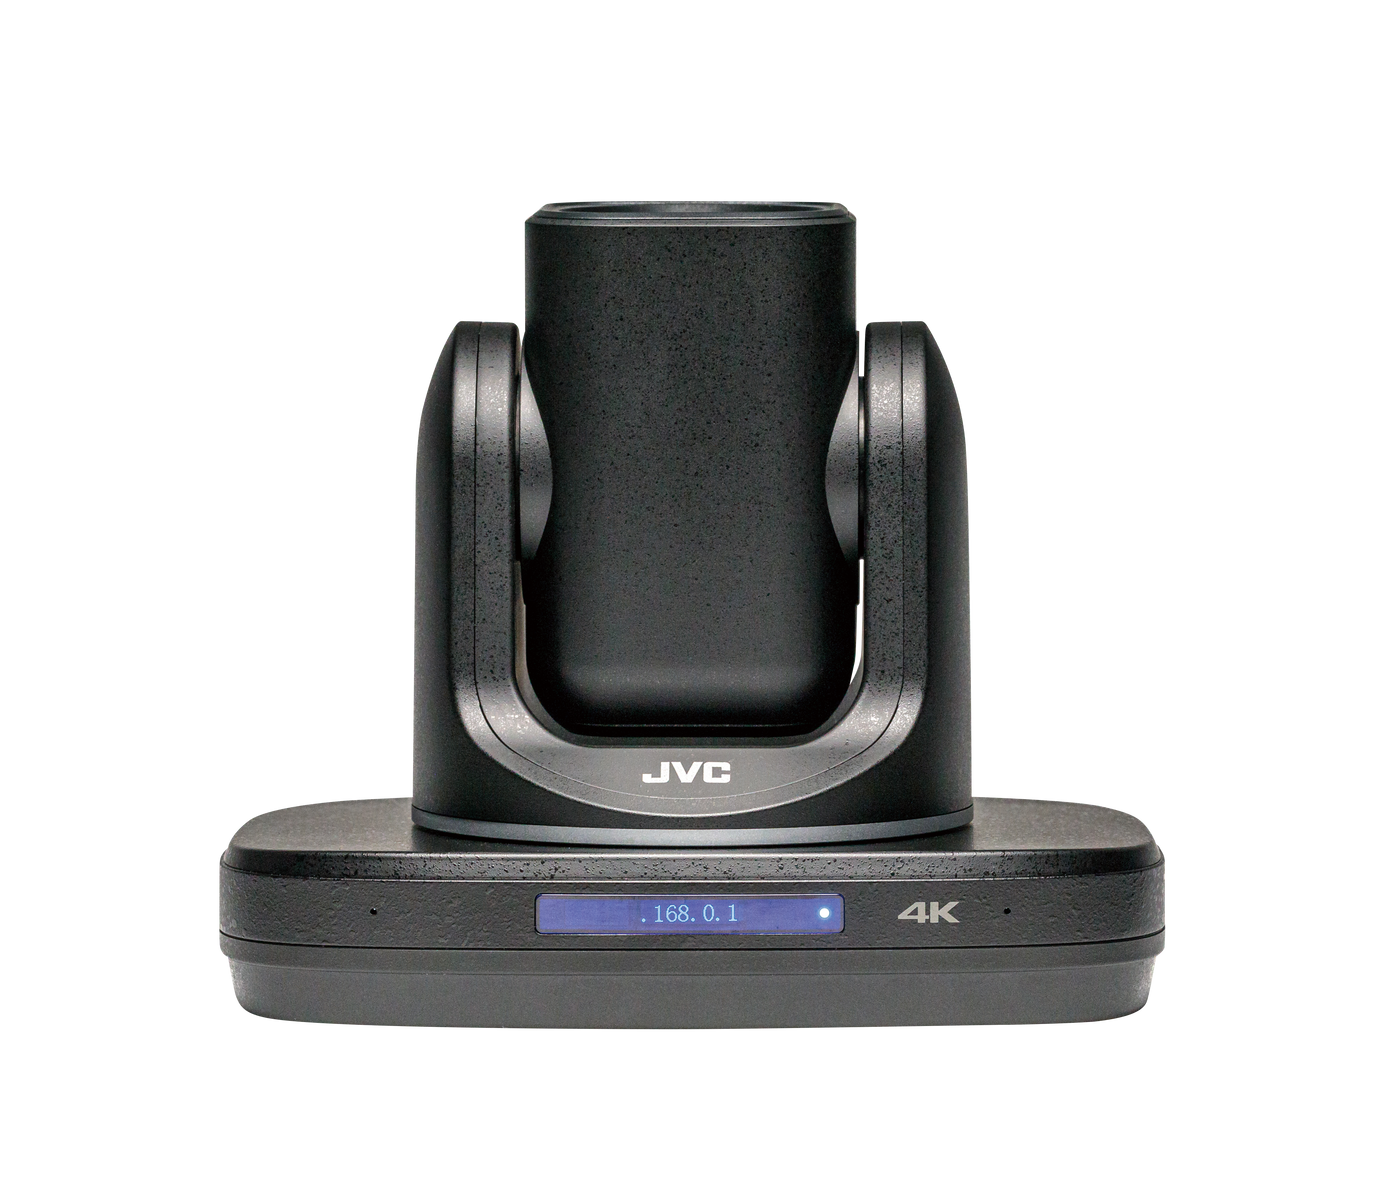 JVC KY-PZ510BU 12x Optical Zoom Ultra Wide Angel 4K60P HEVC Auto-Tracking PTZ Camera with 3G-SDI/HDMI/USB/IP Output (Black)